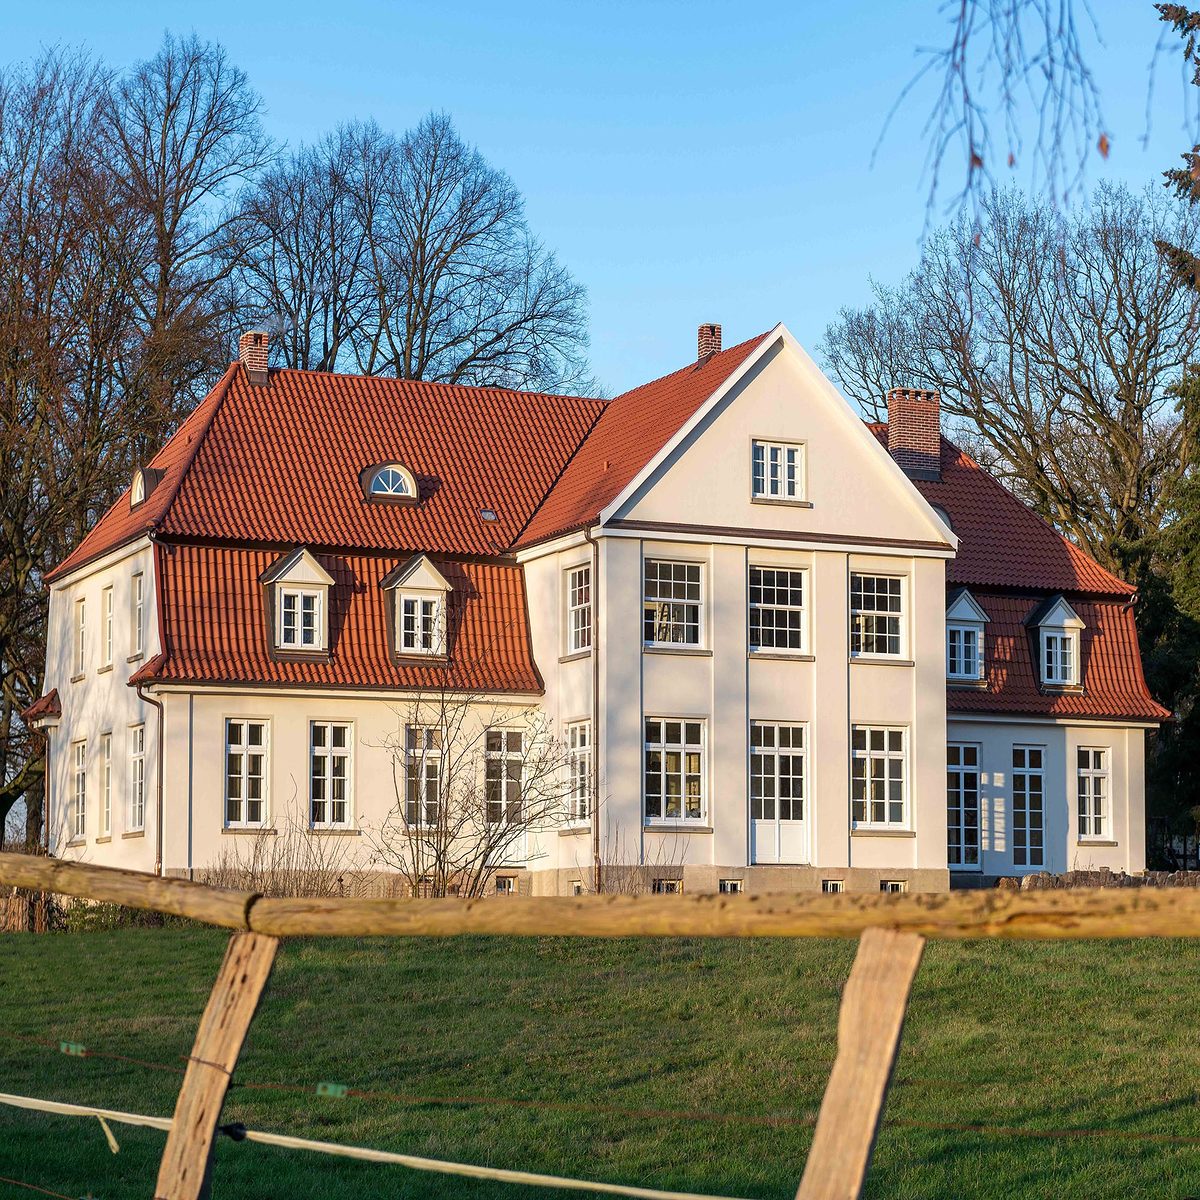 Für die Fensterrestauration auf Gut Heinsen bekam die Tischlerei Dittmer aus Amt Neuhaus den Handwerkerpreis im Denkmalschutz.